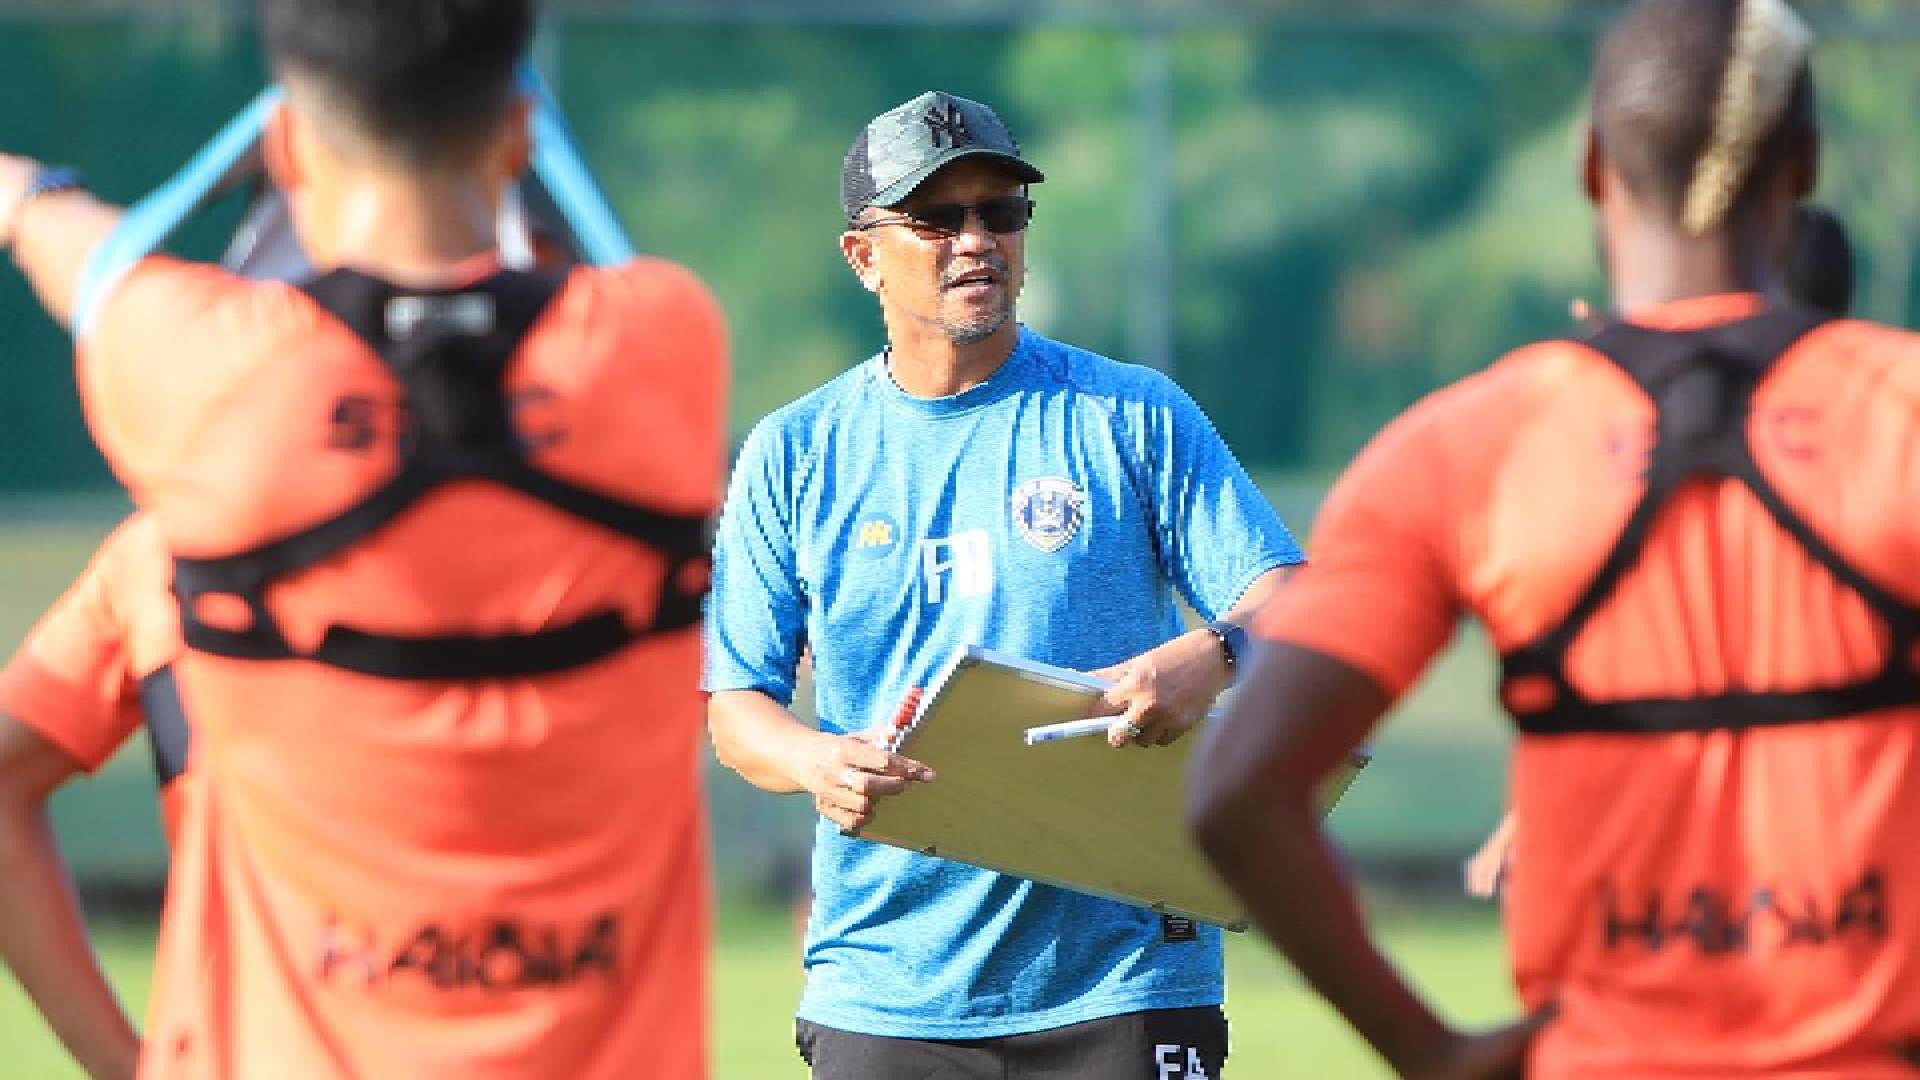 Fandi Ahmad Sri Pahang FC Sri Pahang Sempat Sambar Dua Bintang Korea Sebelum Tamat Jendela Perpindahan?